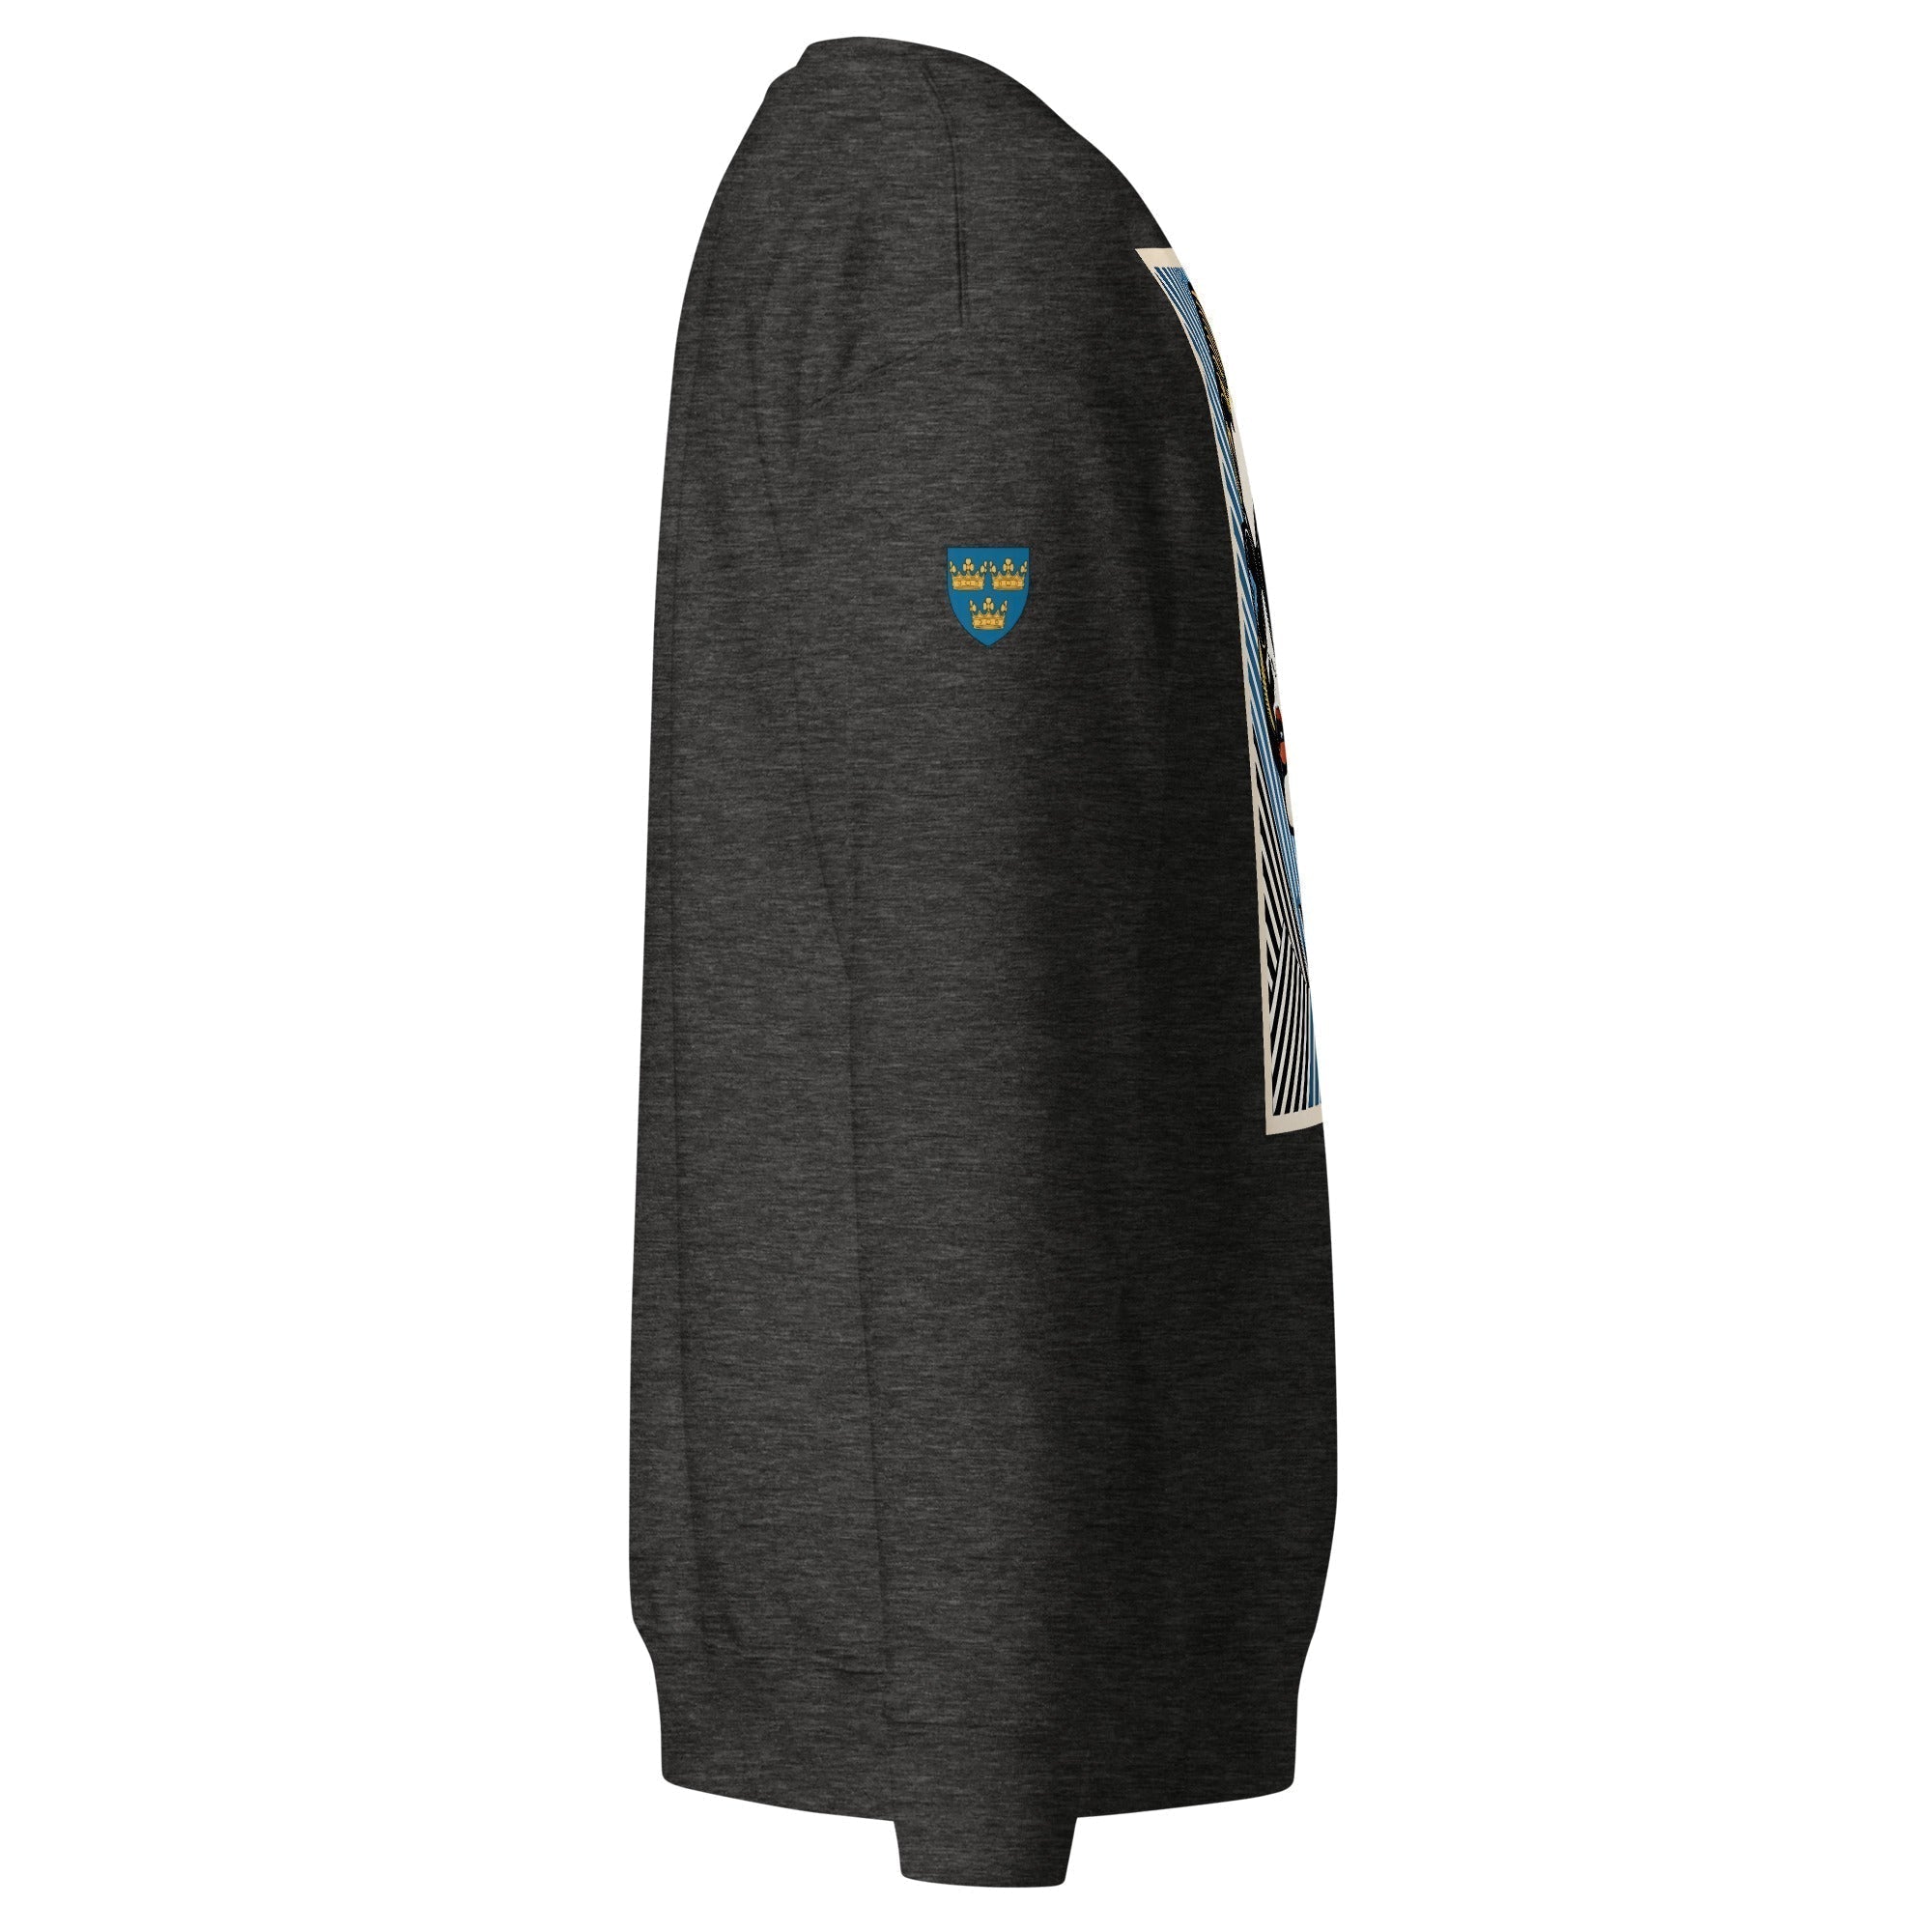 Unisex Premium Sweatshirt - Swedish Vintage Fashion Series v.84 - GRAPHIC T-SHIRTS